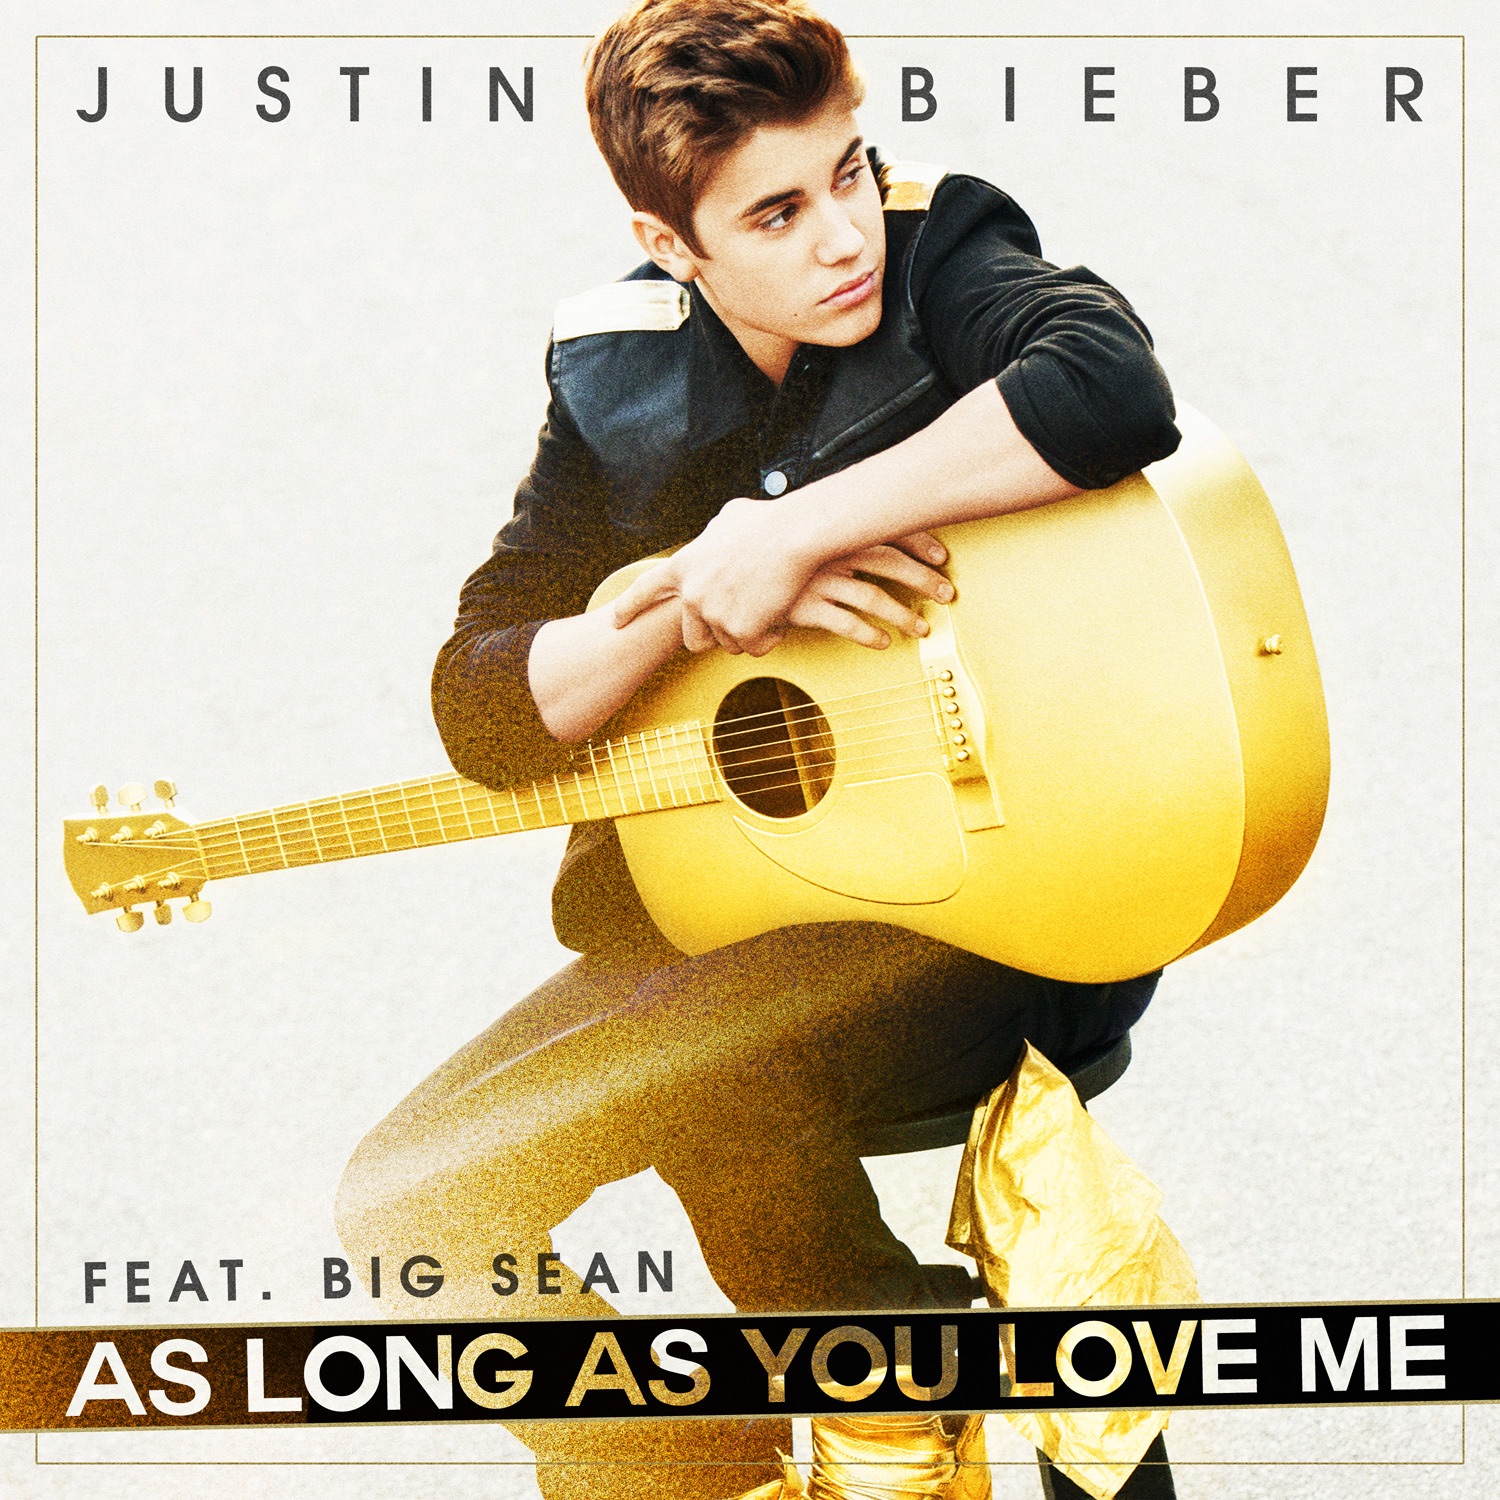 Love me джастин. Джастин Бибер as long as you Love me. Justin Bieber as long as you. As long as you Love me Justin Bieber feat. Big Sean. Justin Bieber as long as you Love me 2012.